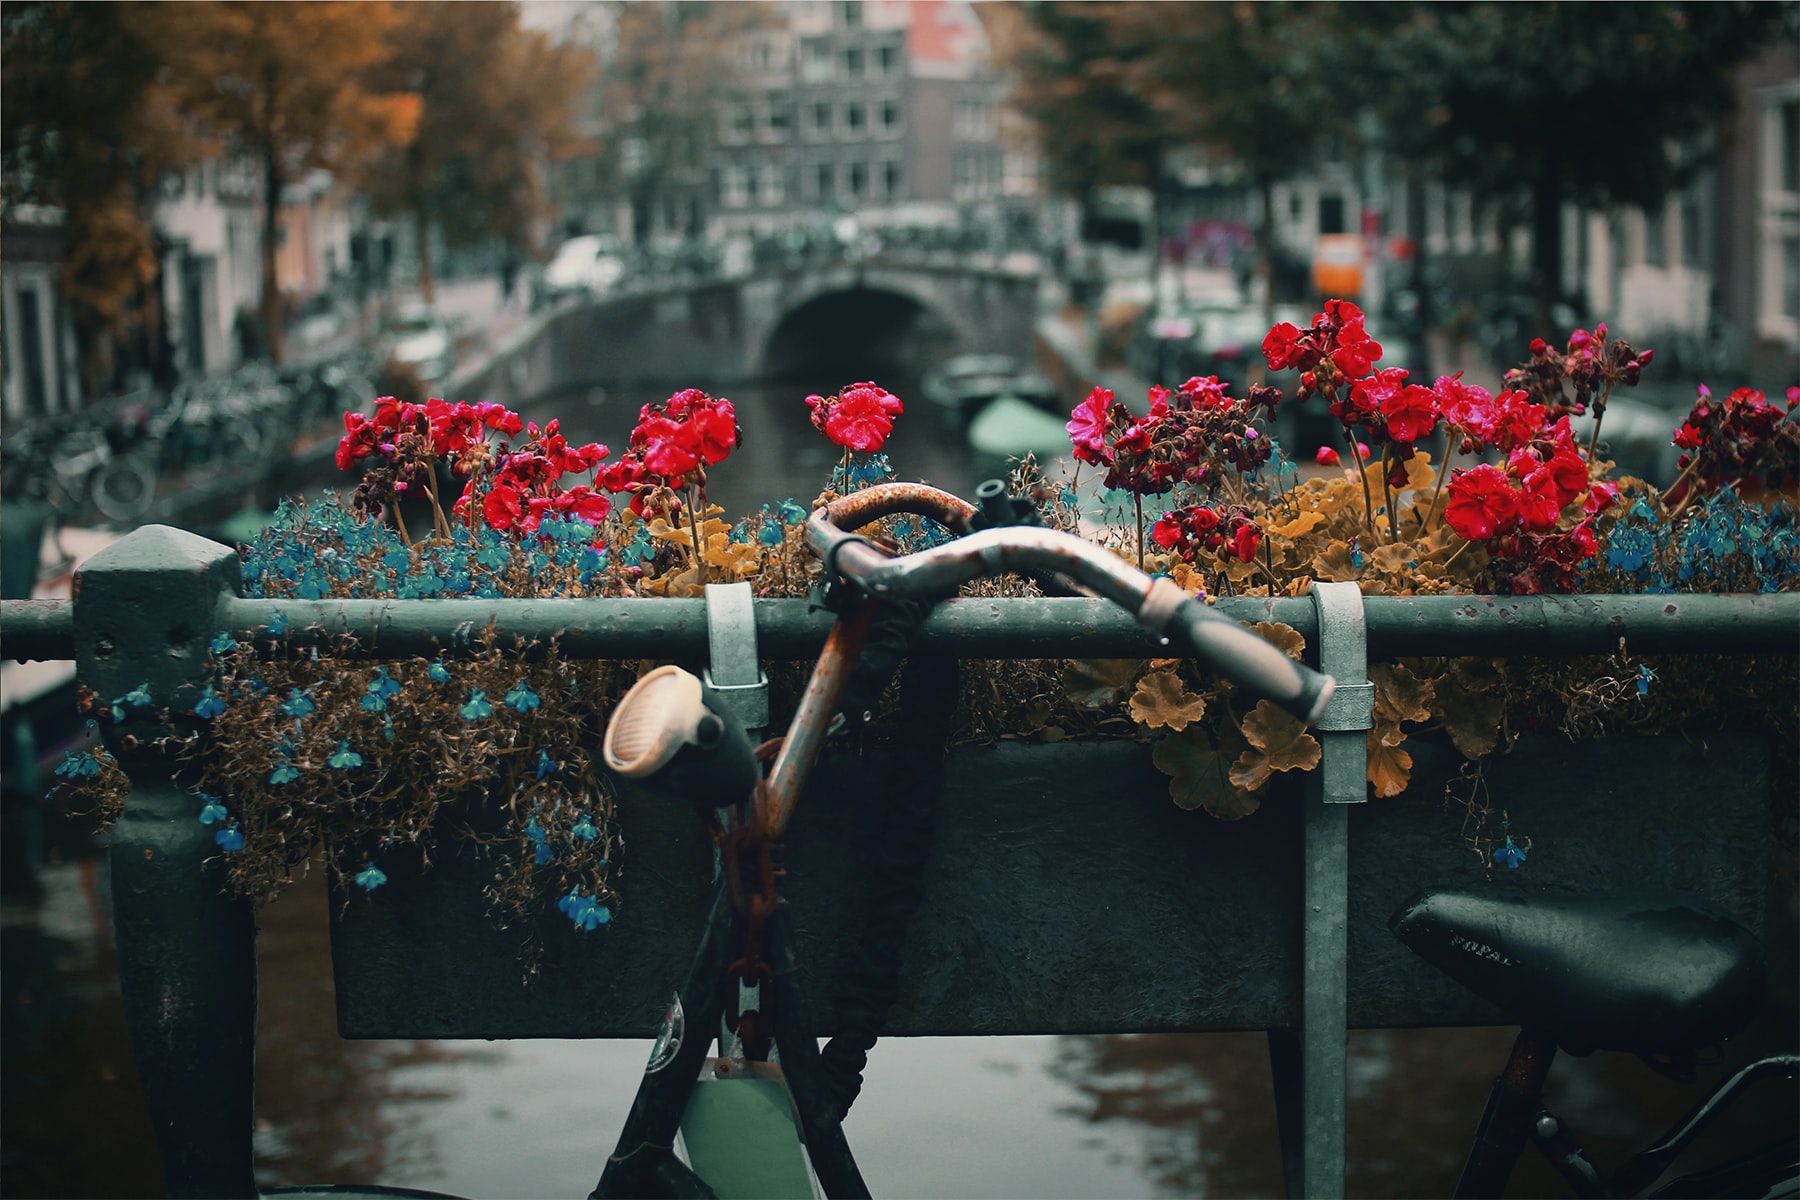 Παλαιό ποδήλατο τύπου vintage, σταθμευμένο σε μια γέφυρα πάνω σε κανάλι του Άμστερνταμ.